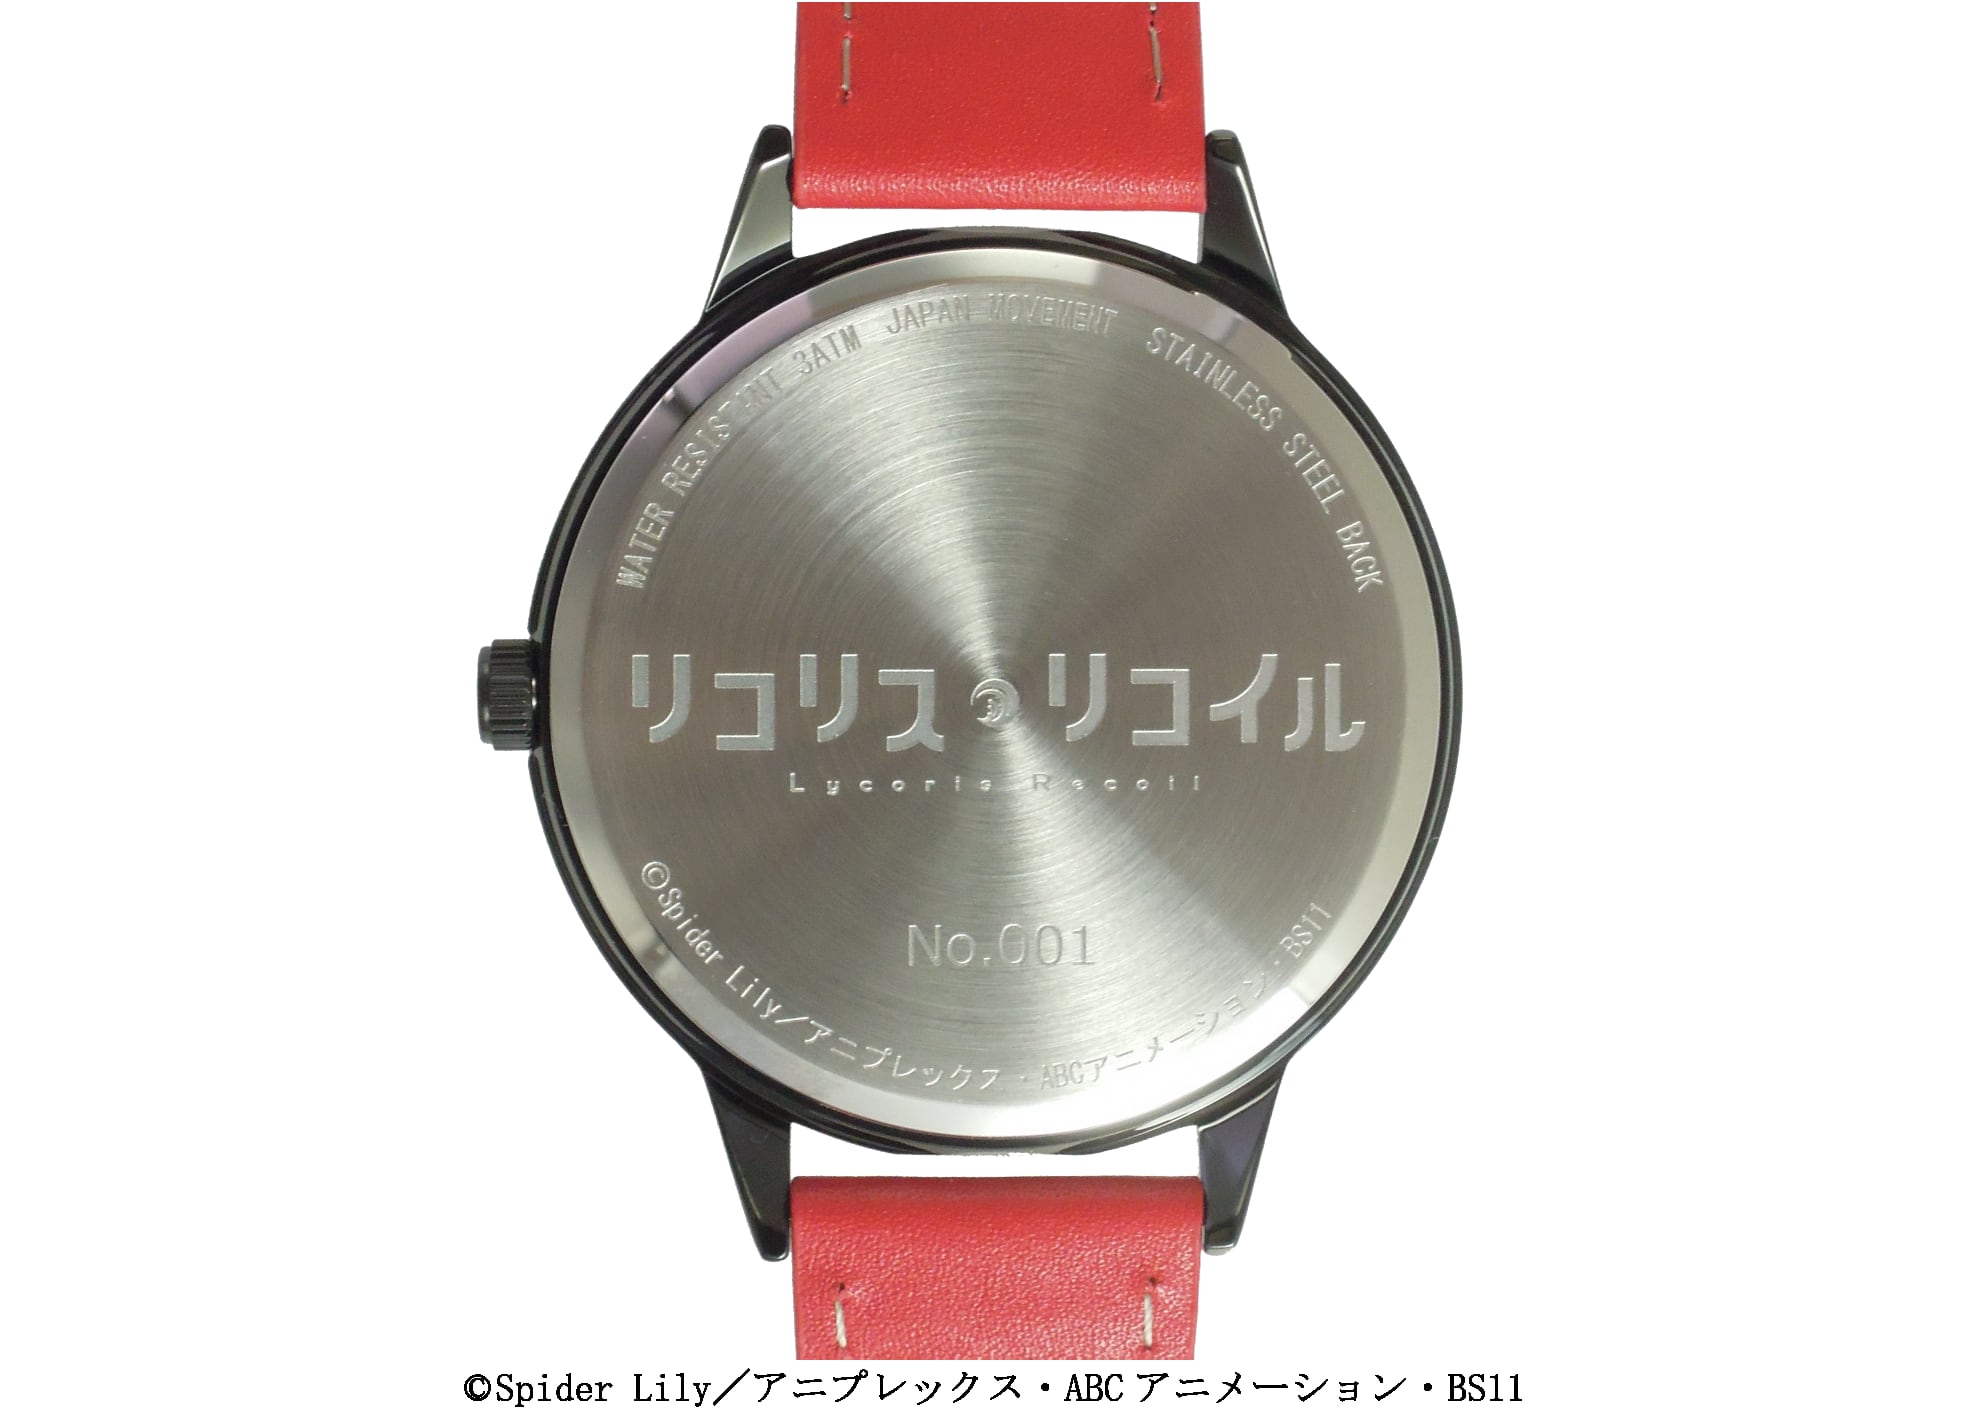 限定50本】リコリス・リコイル 錦木千束(DA 1st)モデル腕時計 / カラー 